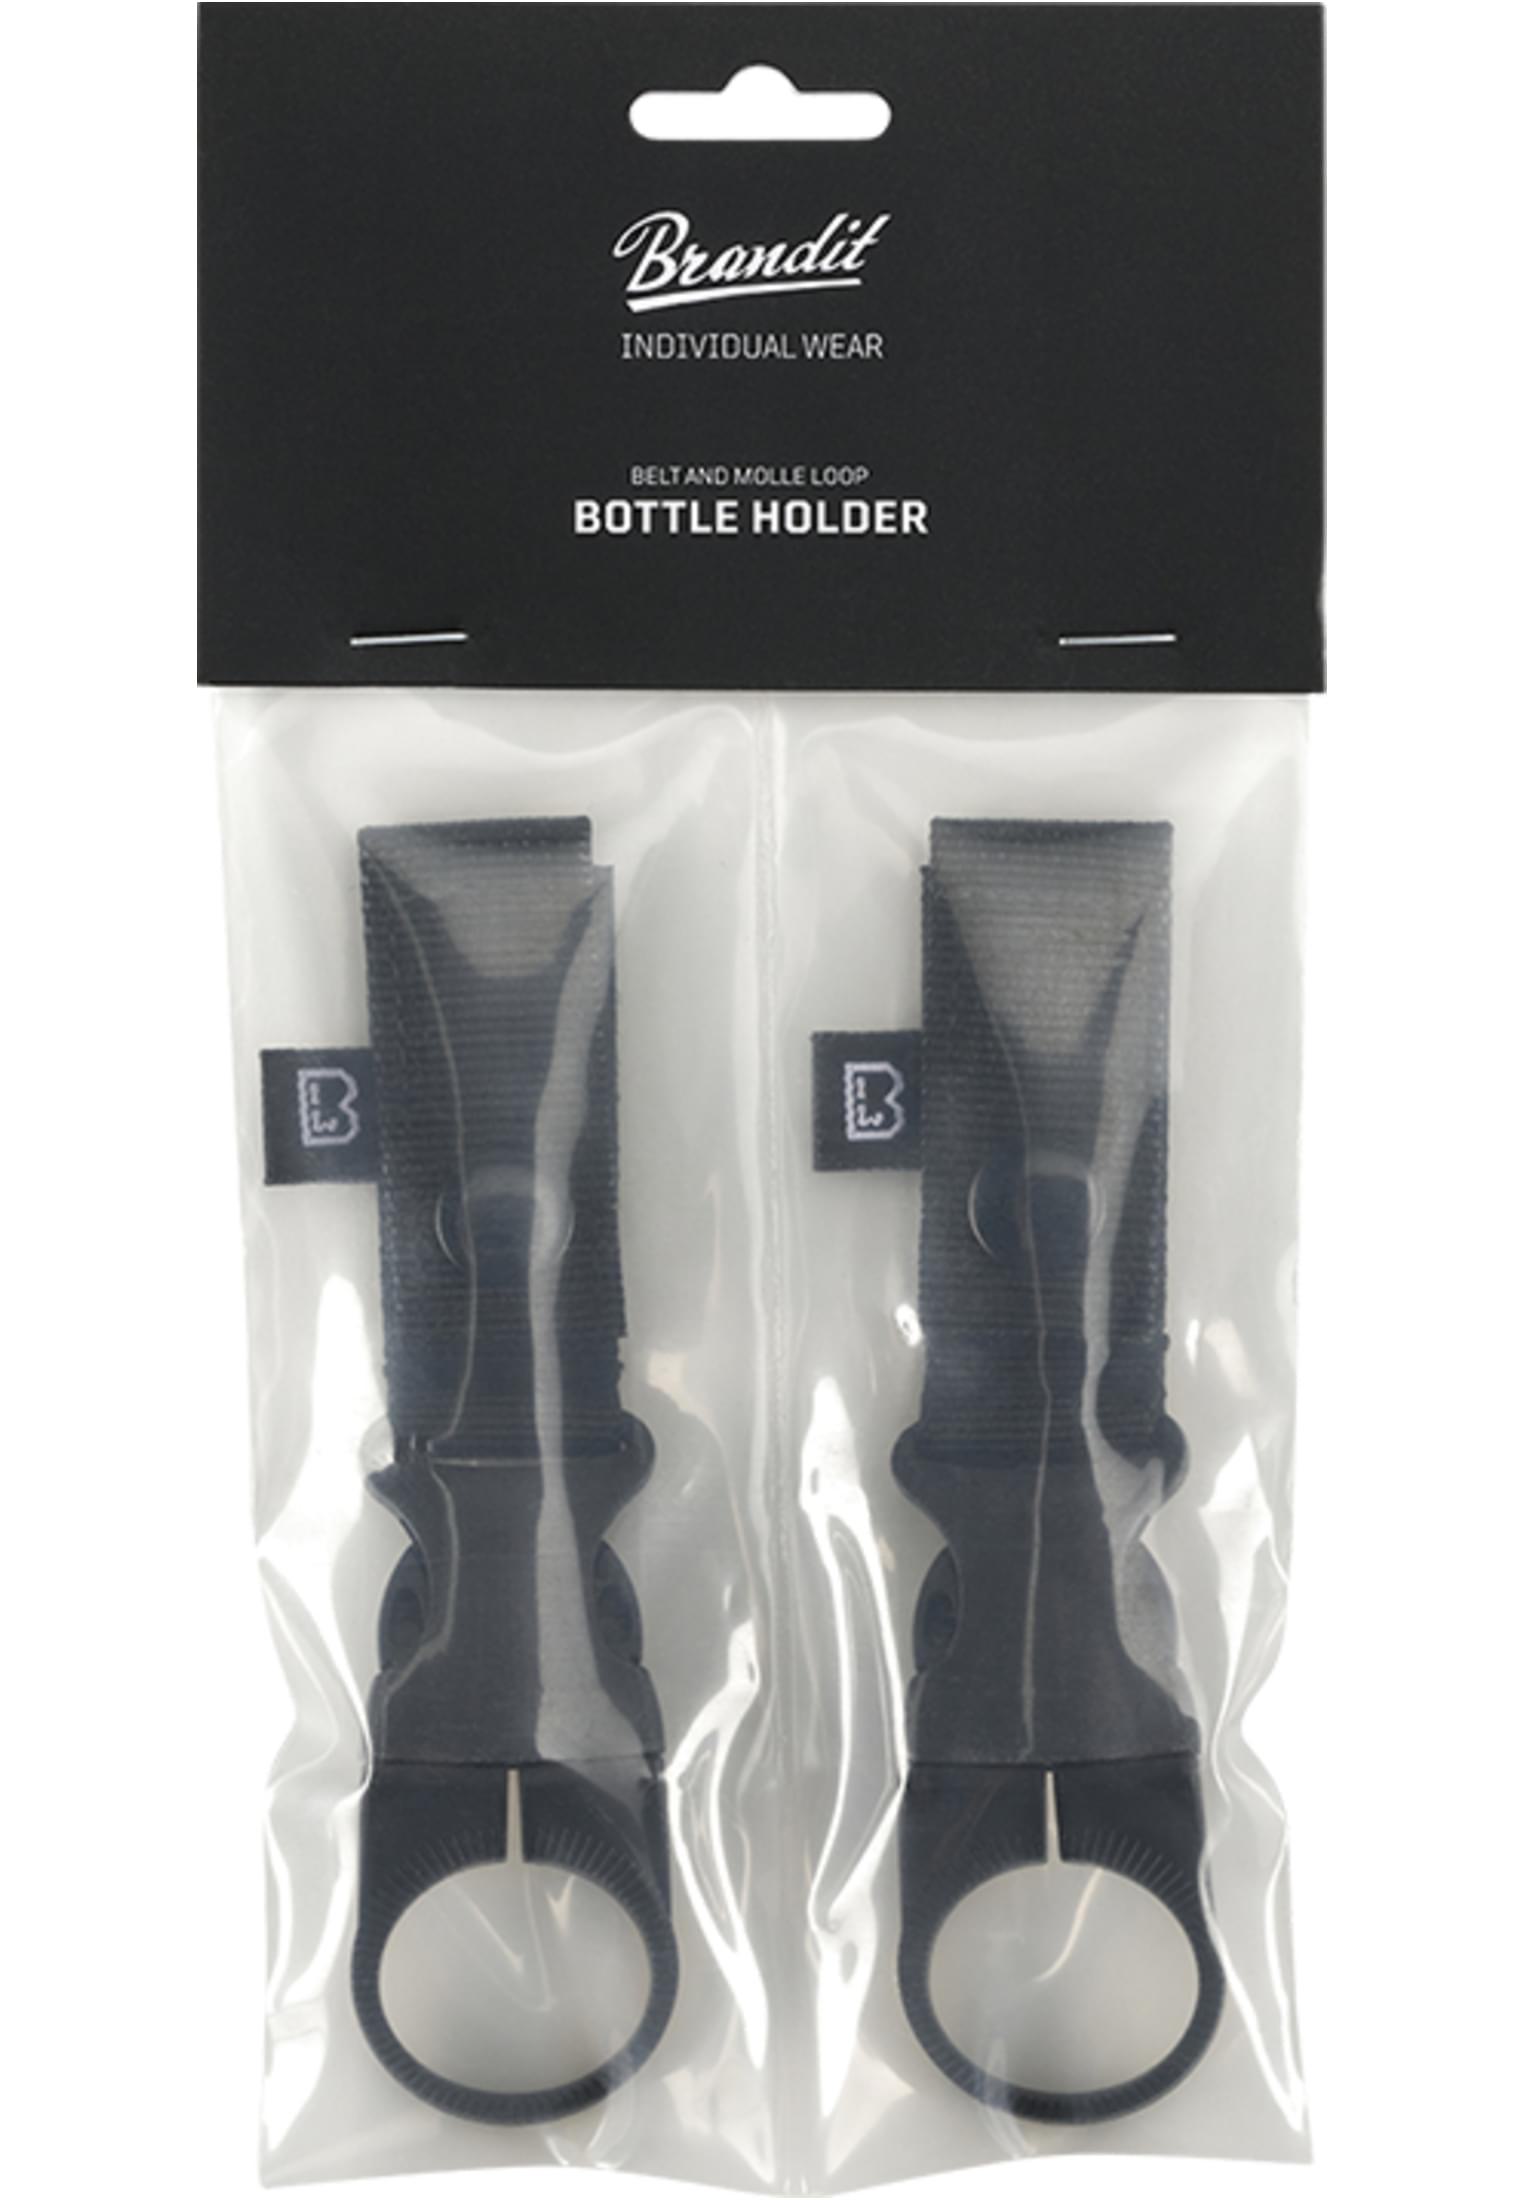 Brandit Belt and Molle Loop Bottle Holder 2 Pack (Farbe: black / Größe: one size)